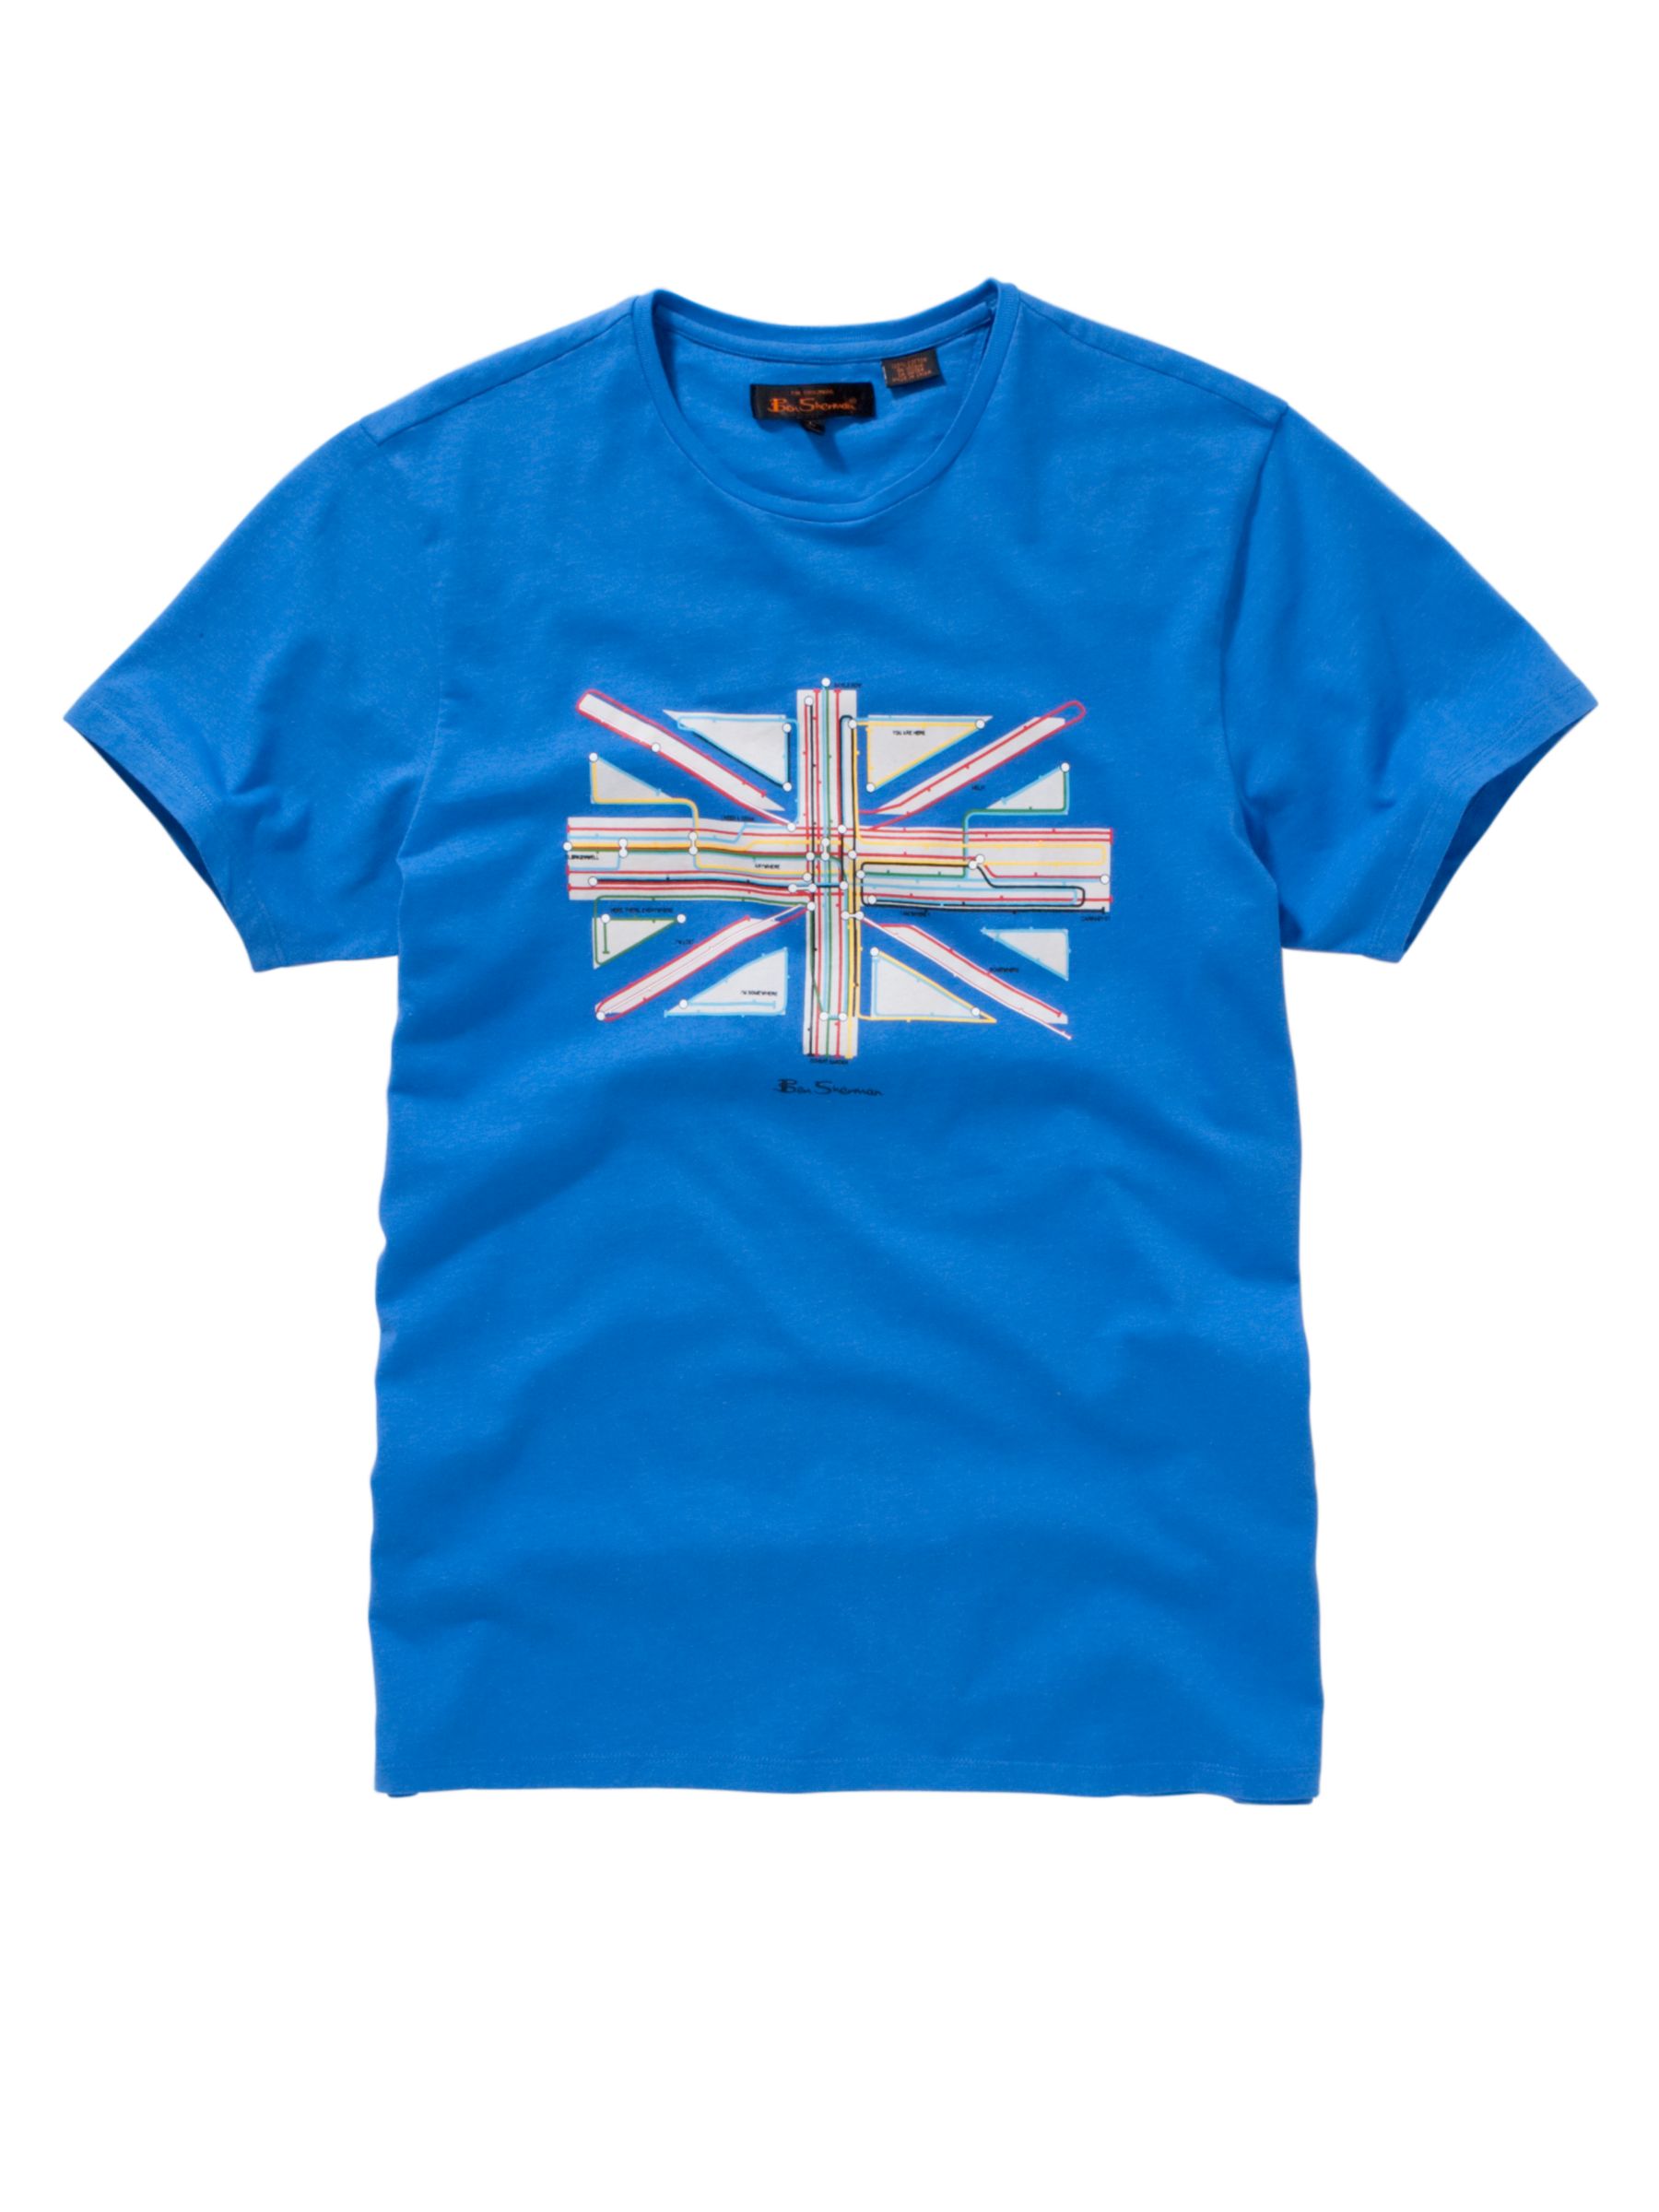 Union Jack Tube T-Shirt, Blue